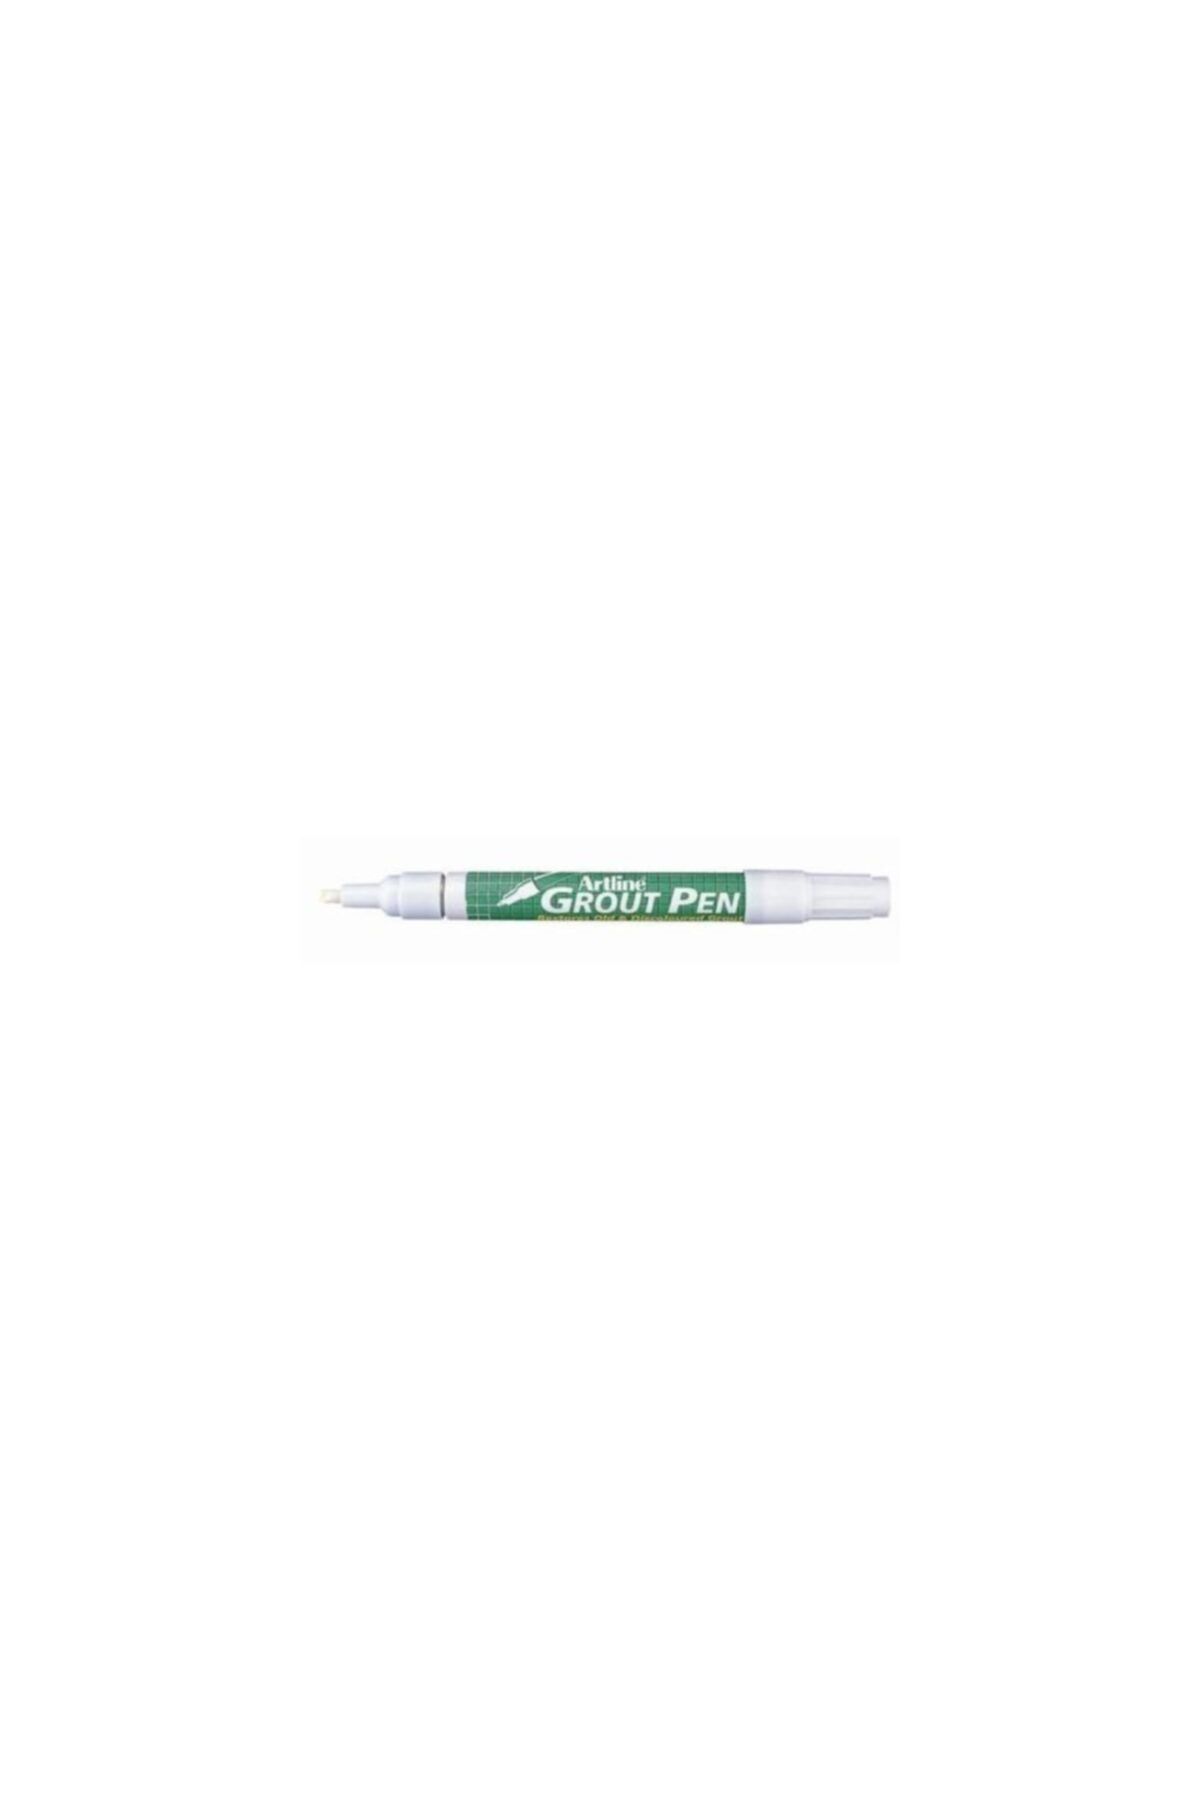 artline Artlıne 419 Grout Pen Fanyaz Kalemi Beyaz